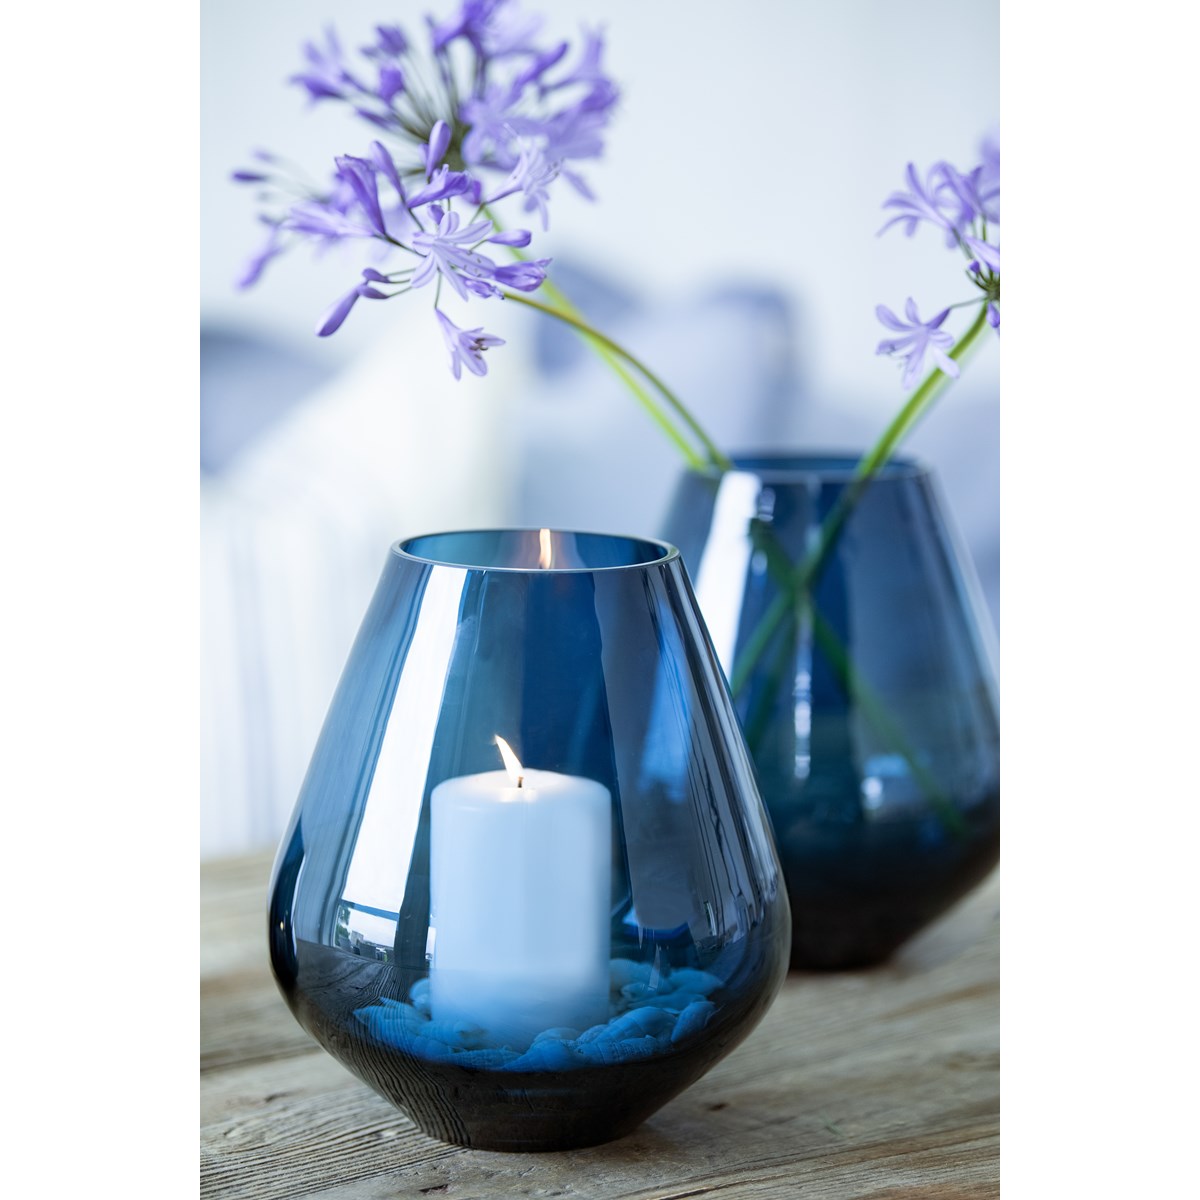 Magnor, rocks telykt/vase 12cm blå